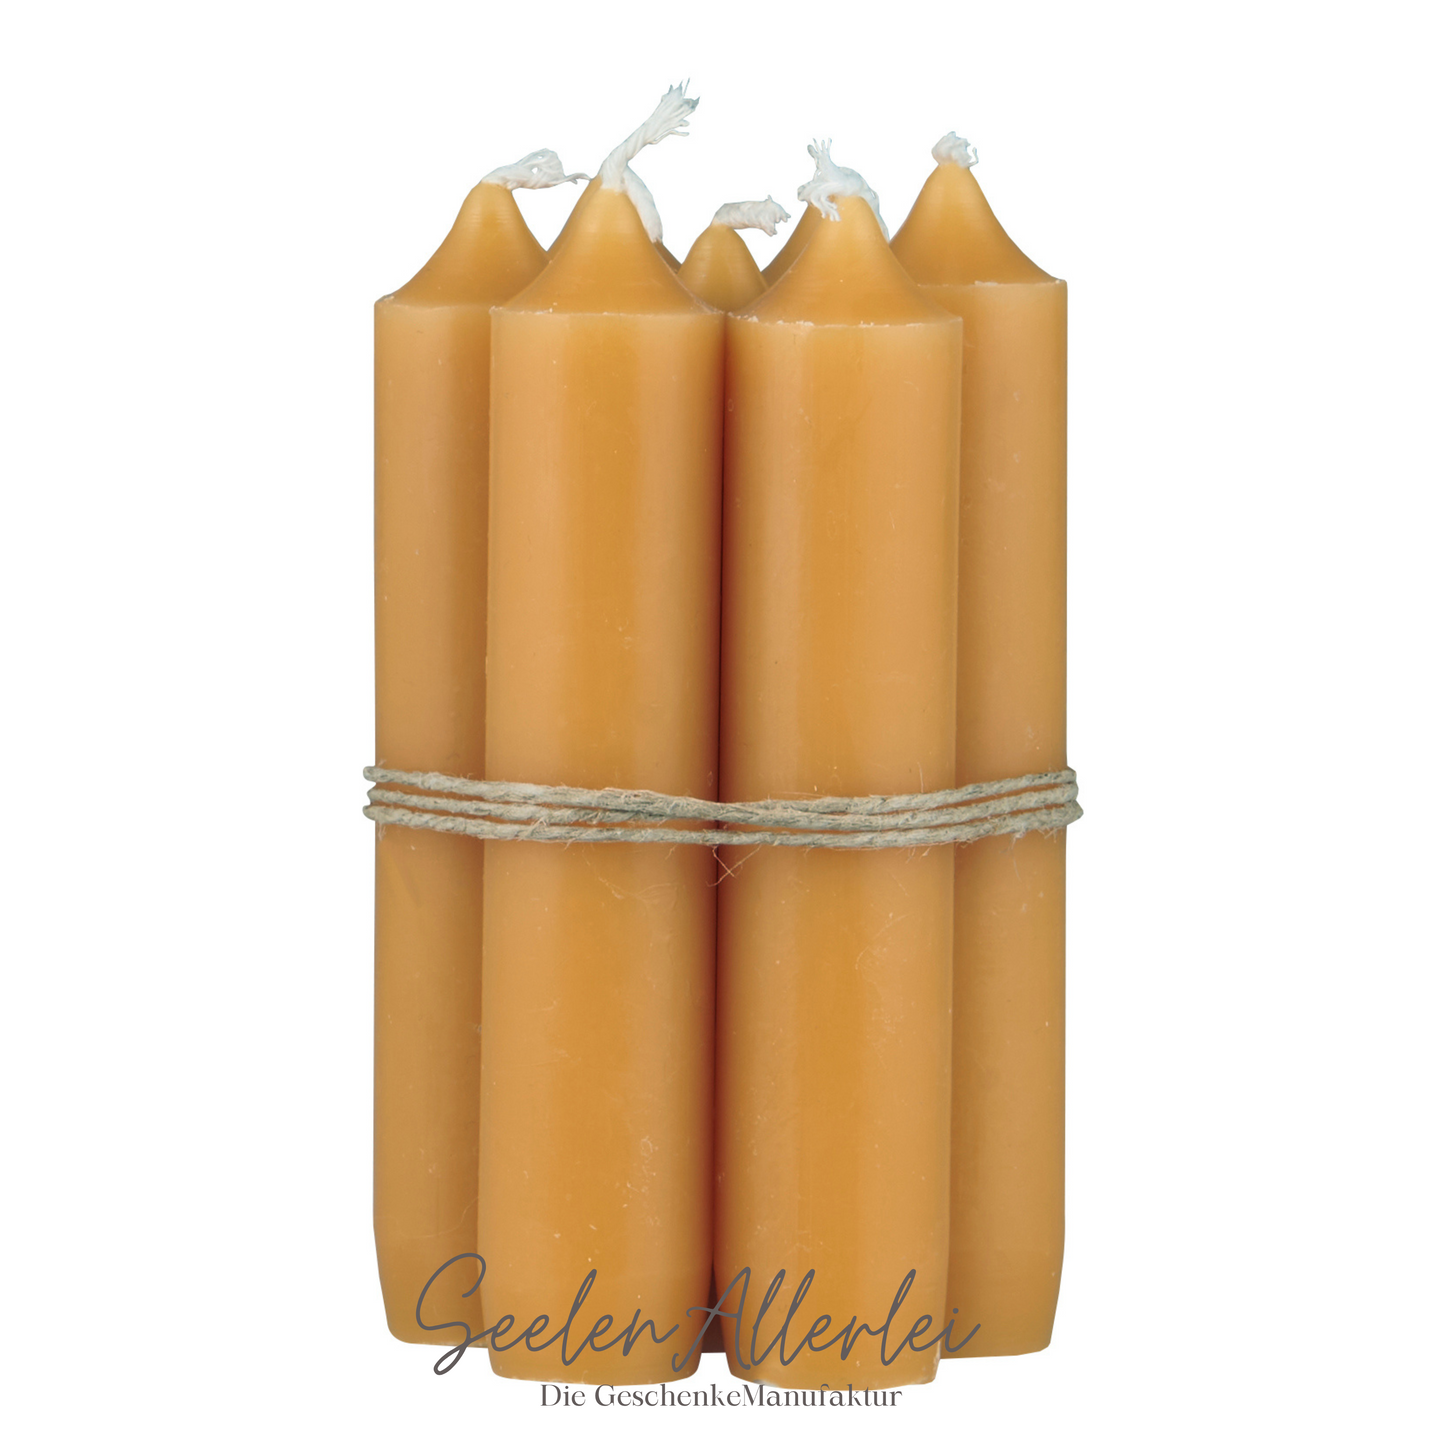 6 mustard farbene Kerzen sind mit Juteband aneinander gebunden und sind vor weißem Hintergrund fotografiert worden